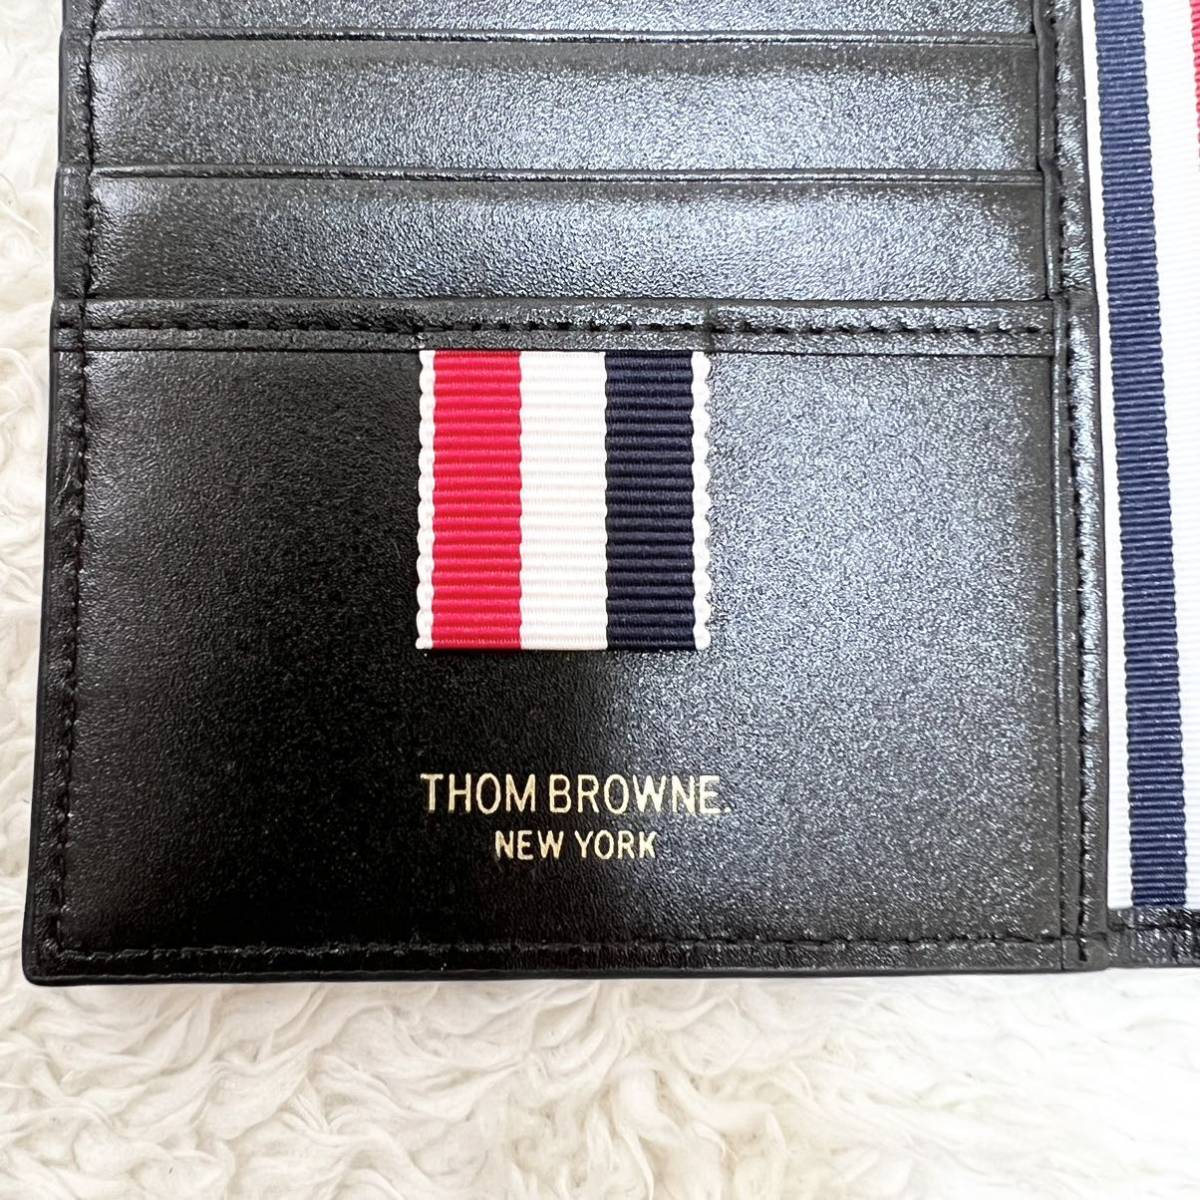 極美品 未使用品級 トムブラウン トリコロール ライン カードケース レザー ブラック 黒 薄型 二つ折り Thom Browne 